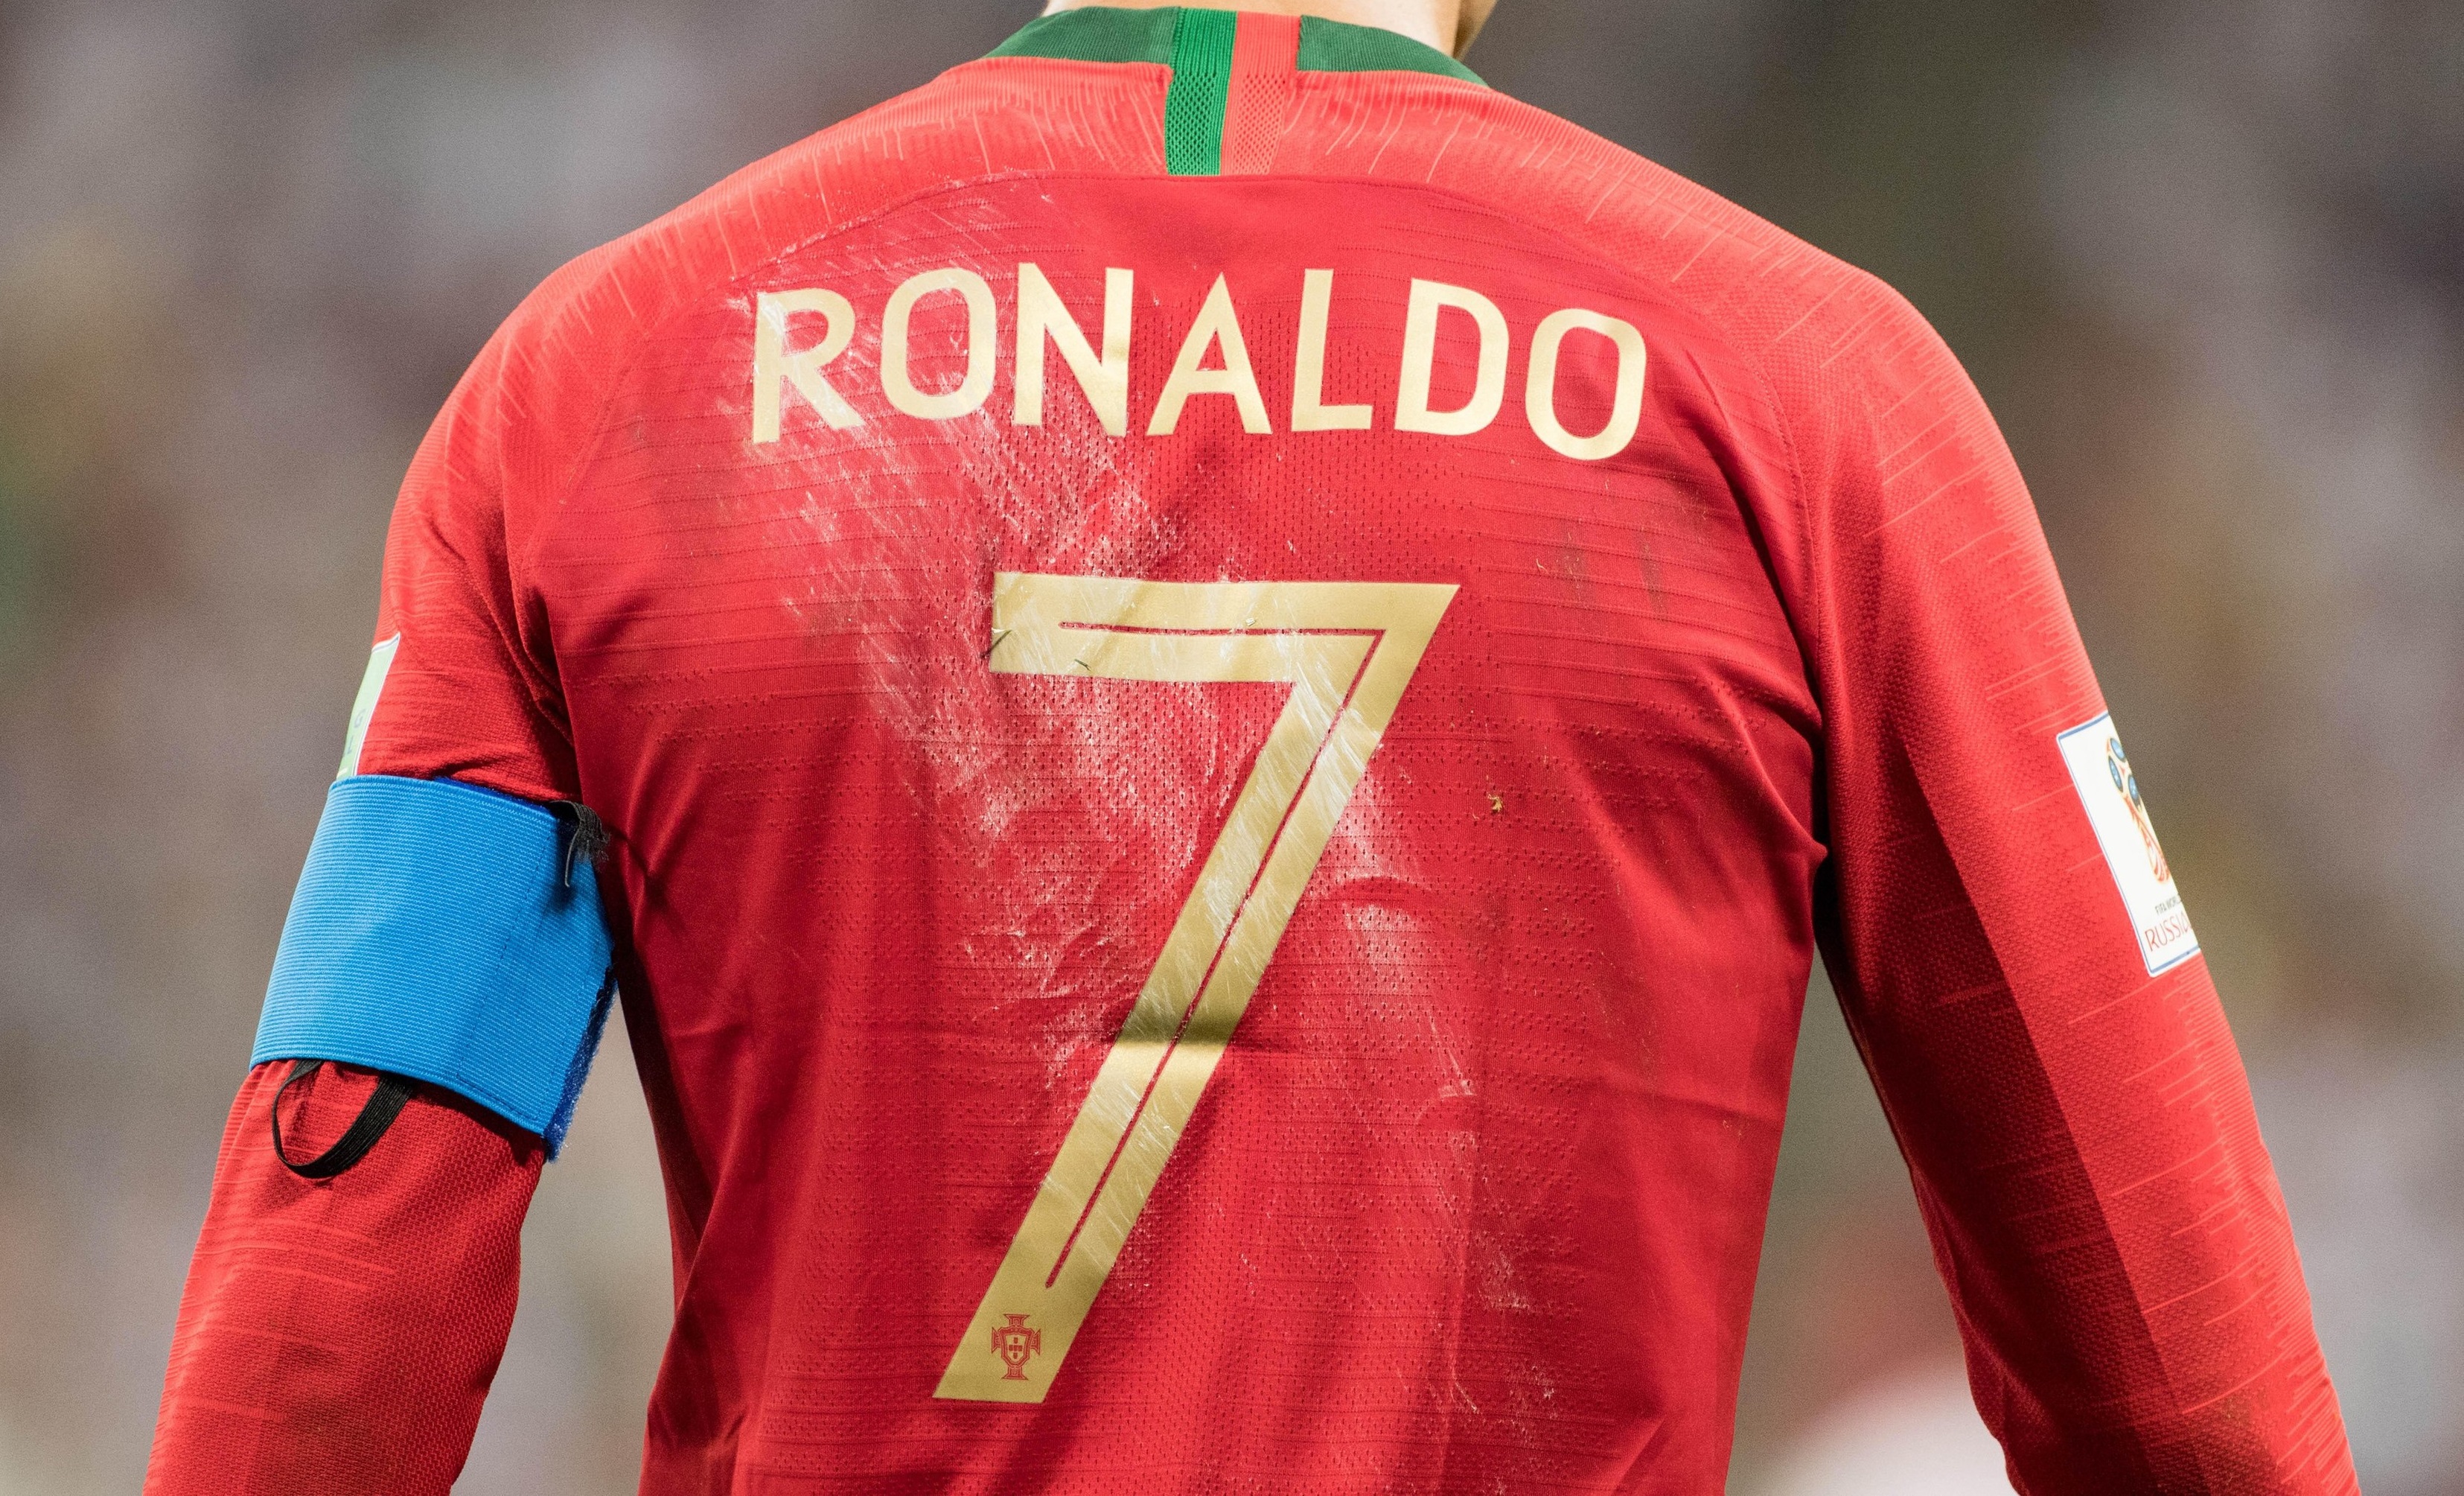 Premieră la naționala Portugaliei, după 17 ani! Cine e fotbalistul care a purtat numărul 7